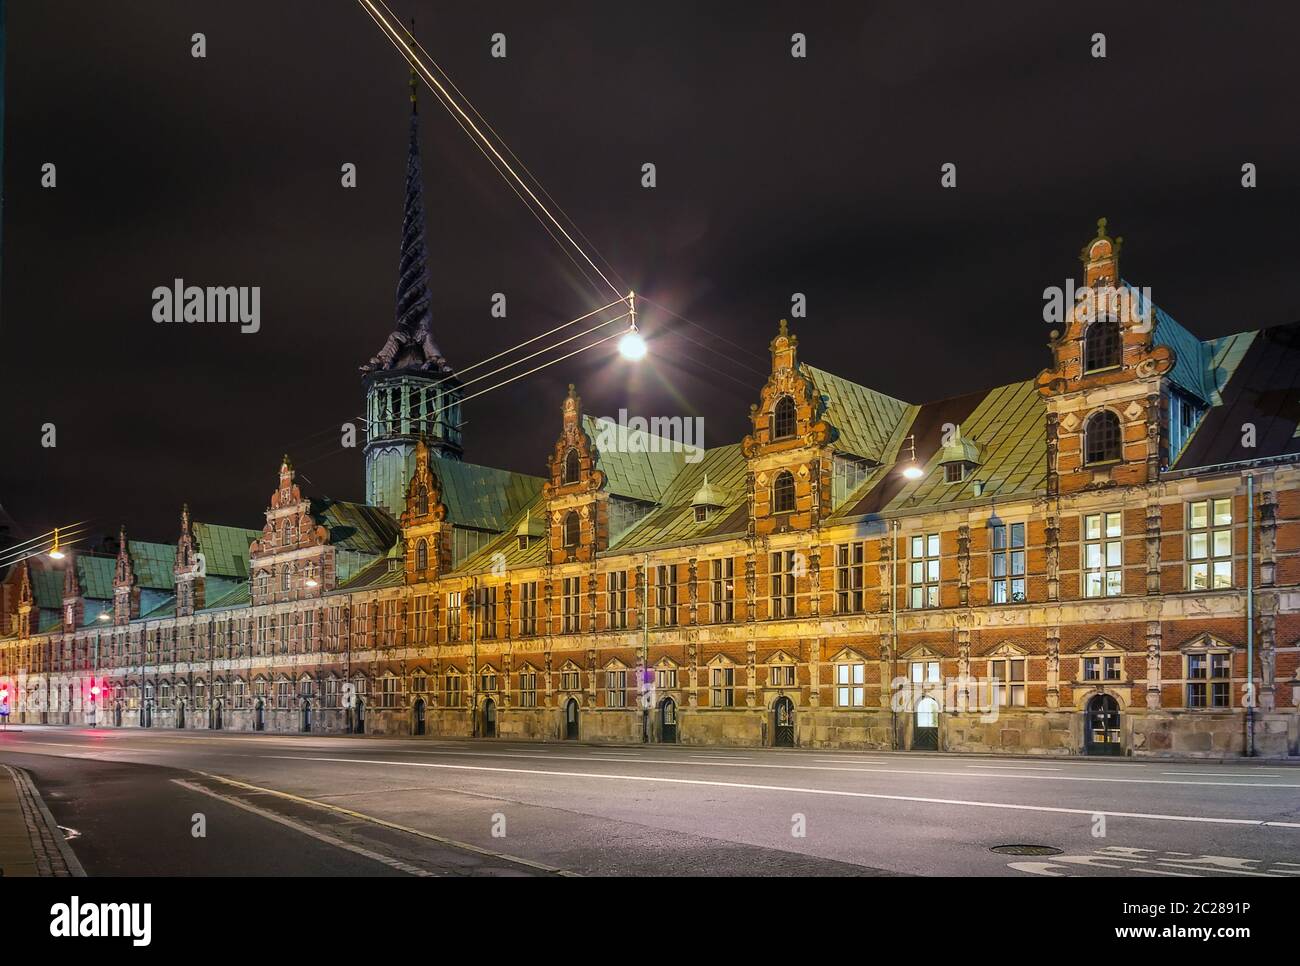 Borsen (The Stock Exchange) in evening, Copenhagen Stock Photo